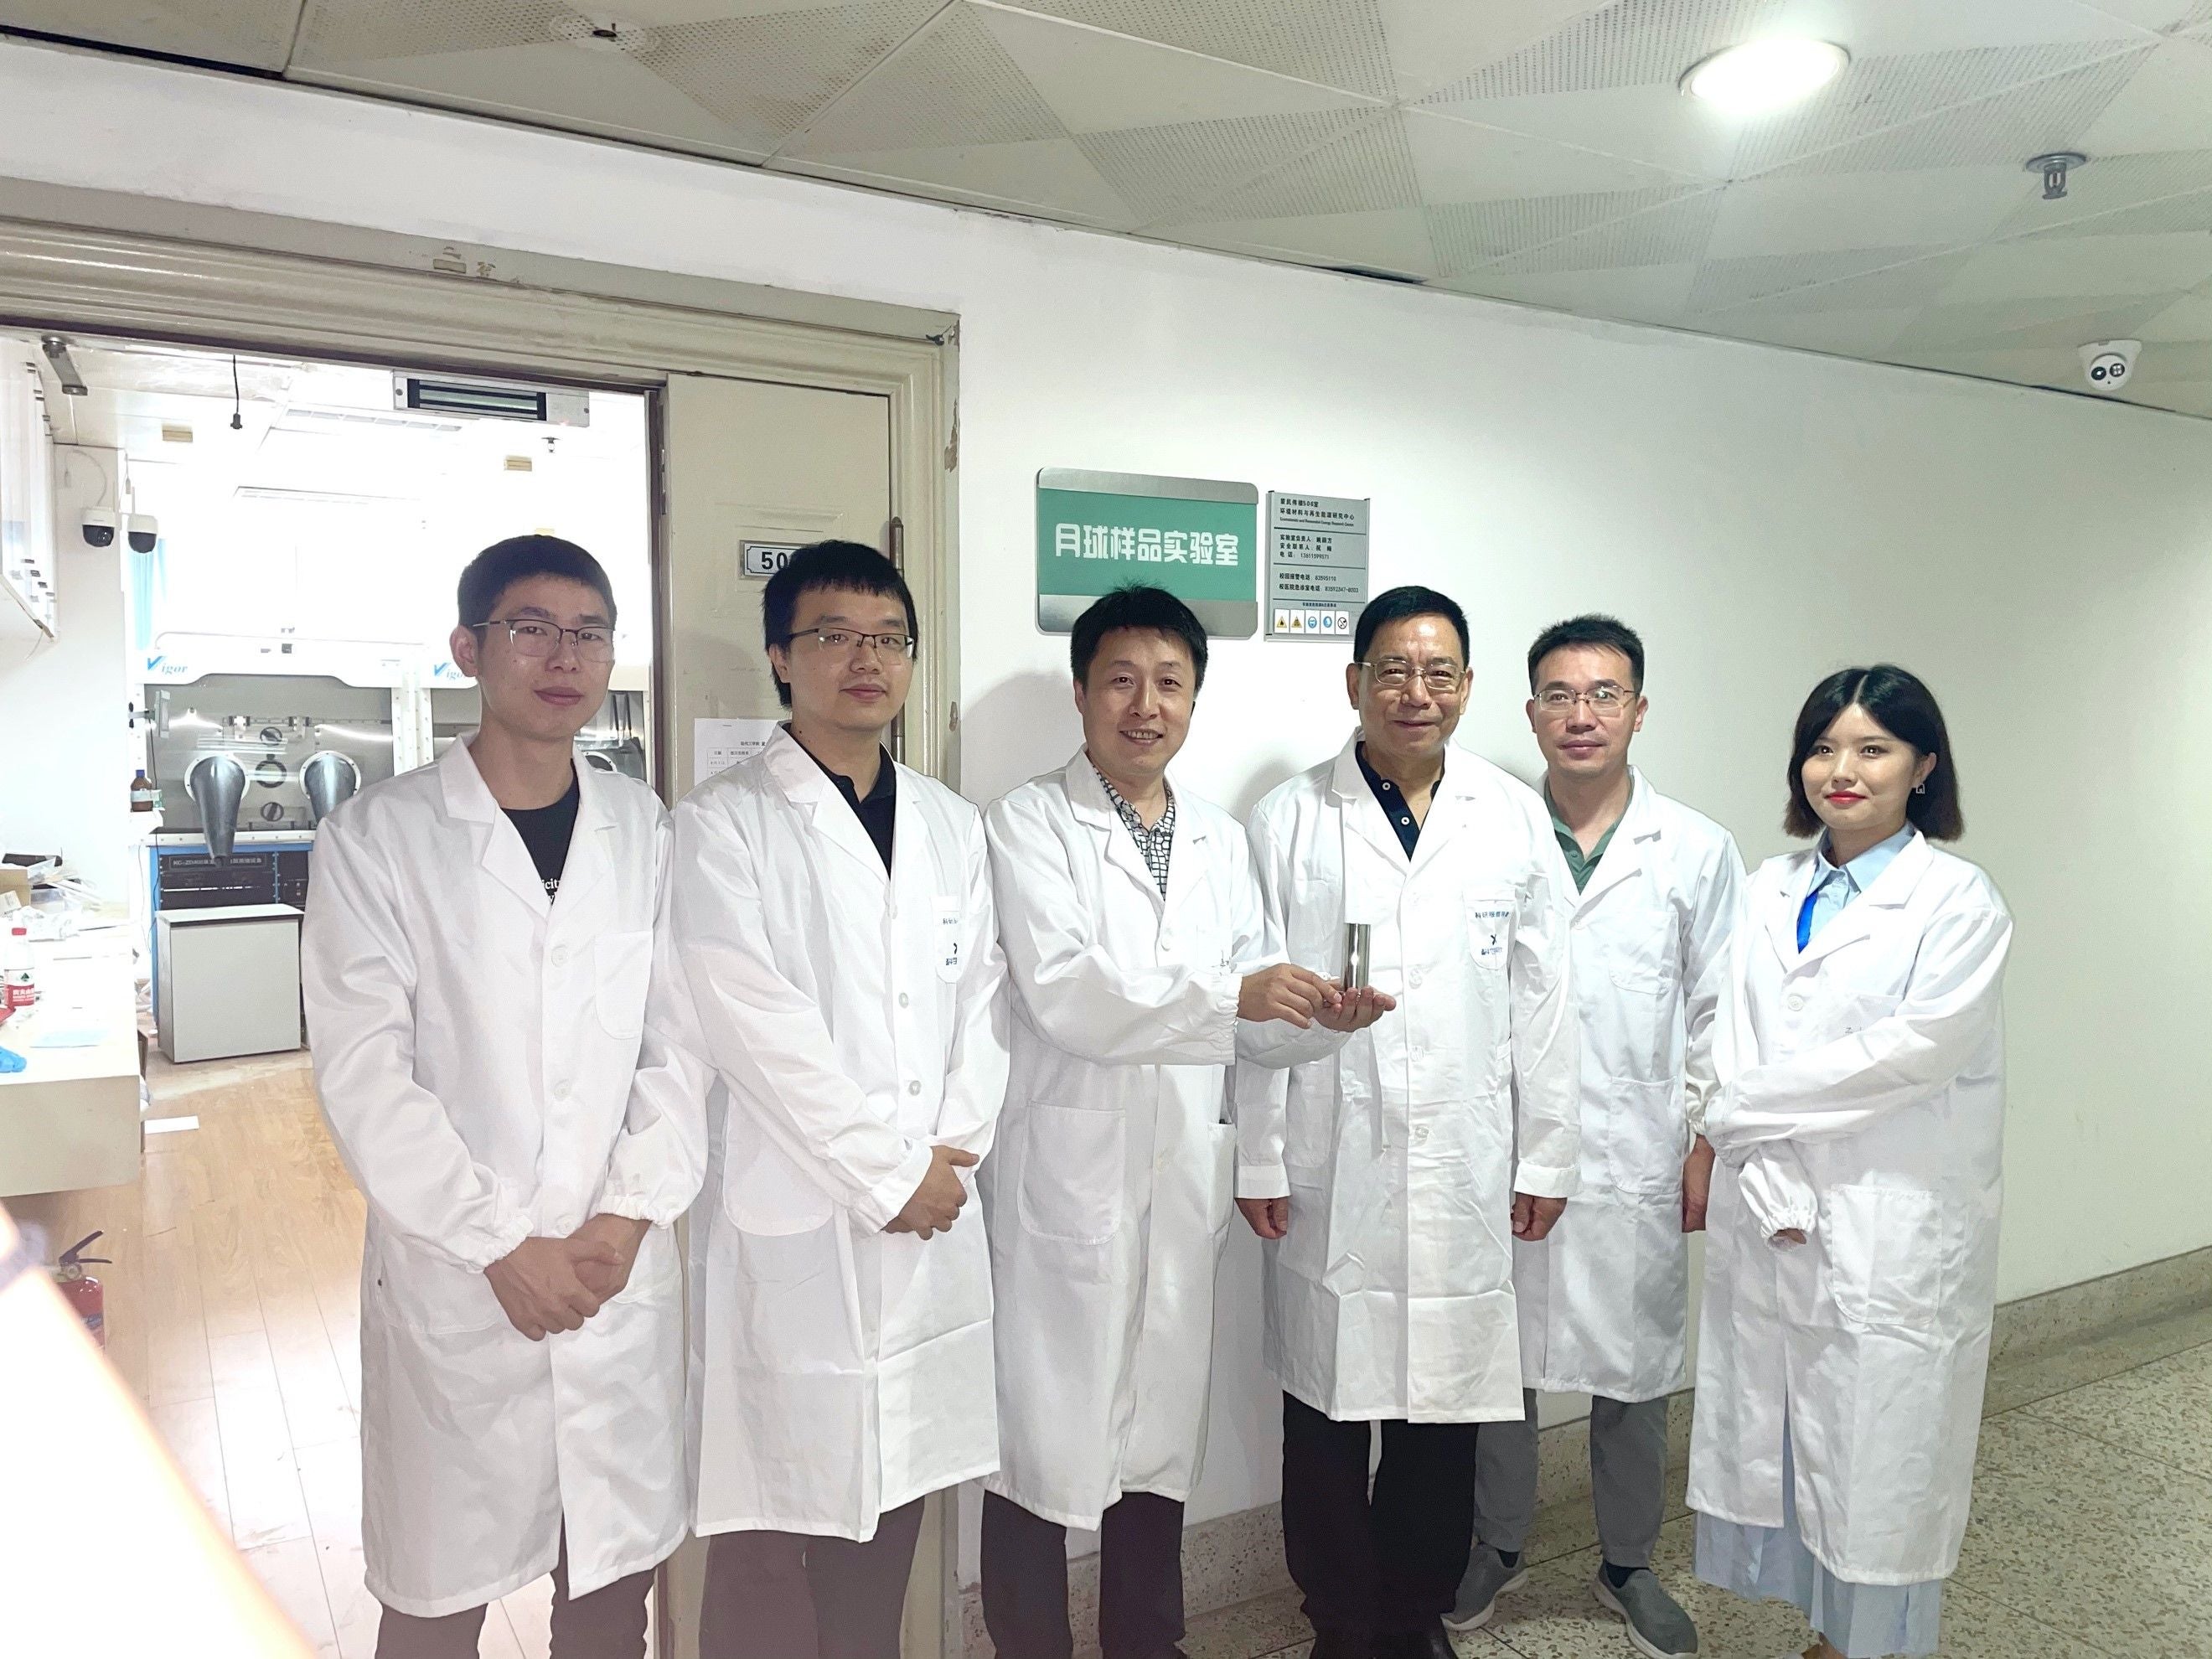 The team at Nanjing University holds the lunar soil sample